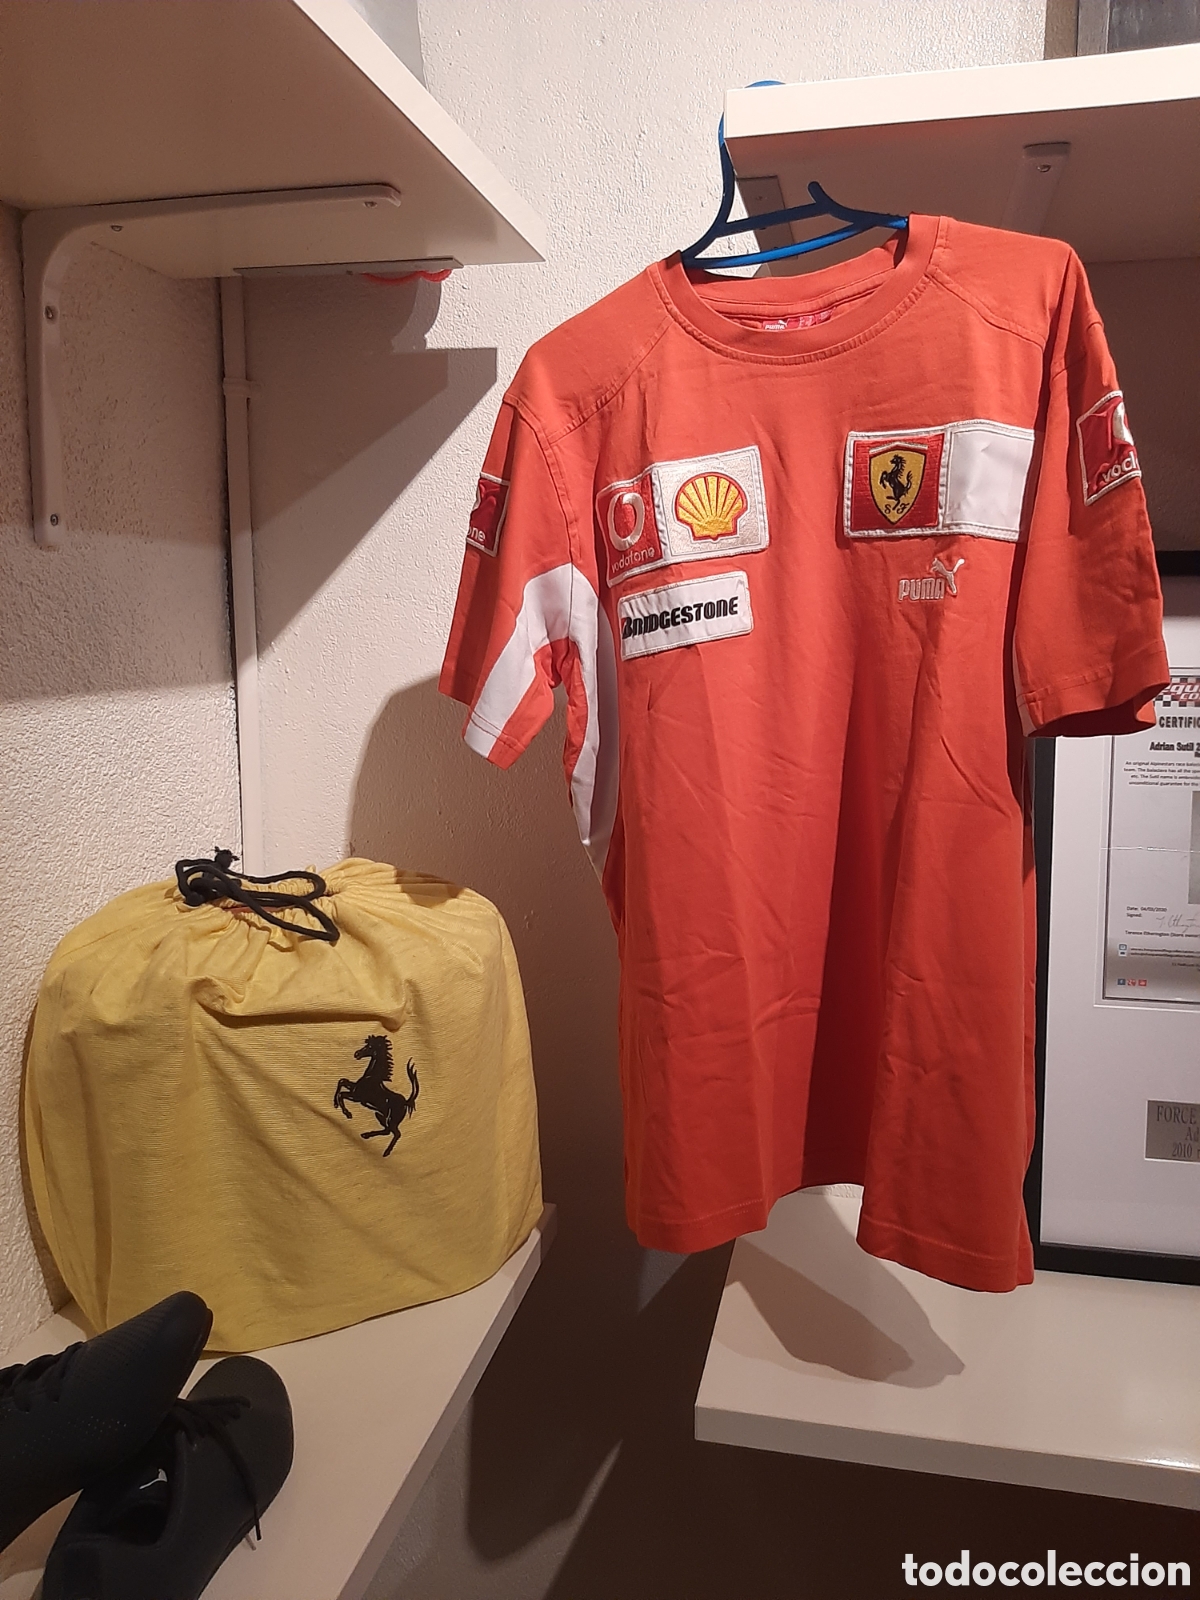 camiseta oficial ferrari f1 team puma - Compra venta en todocoleccion